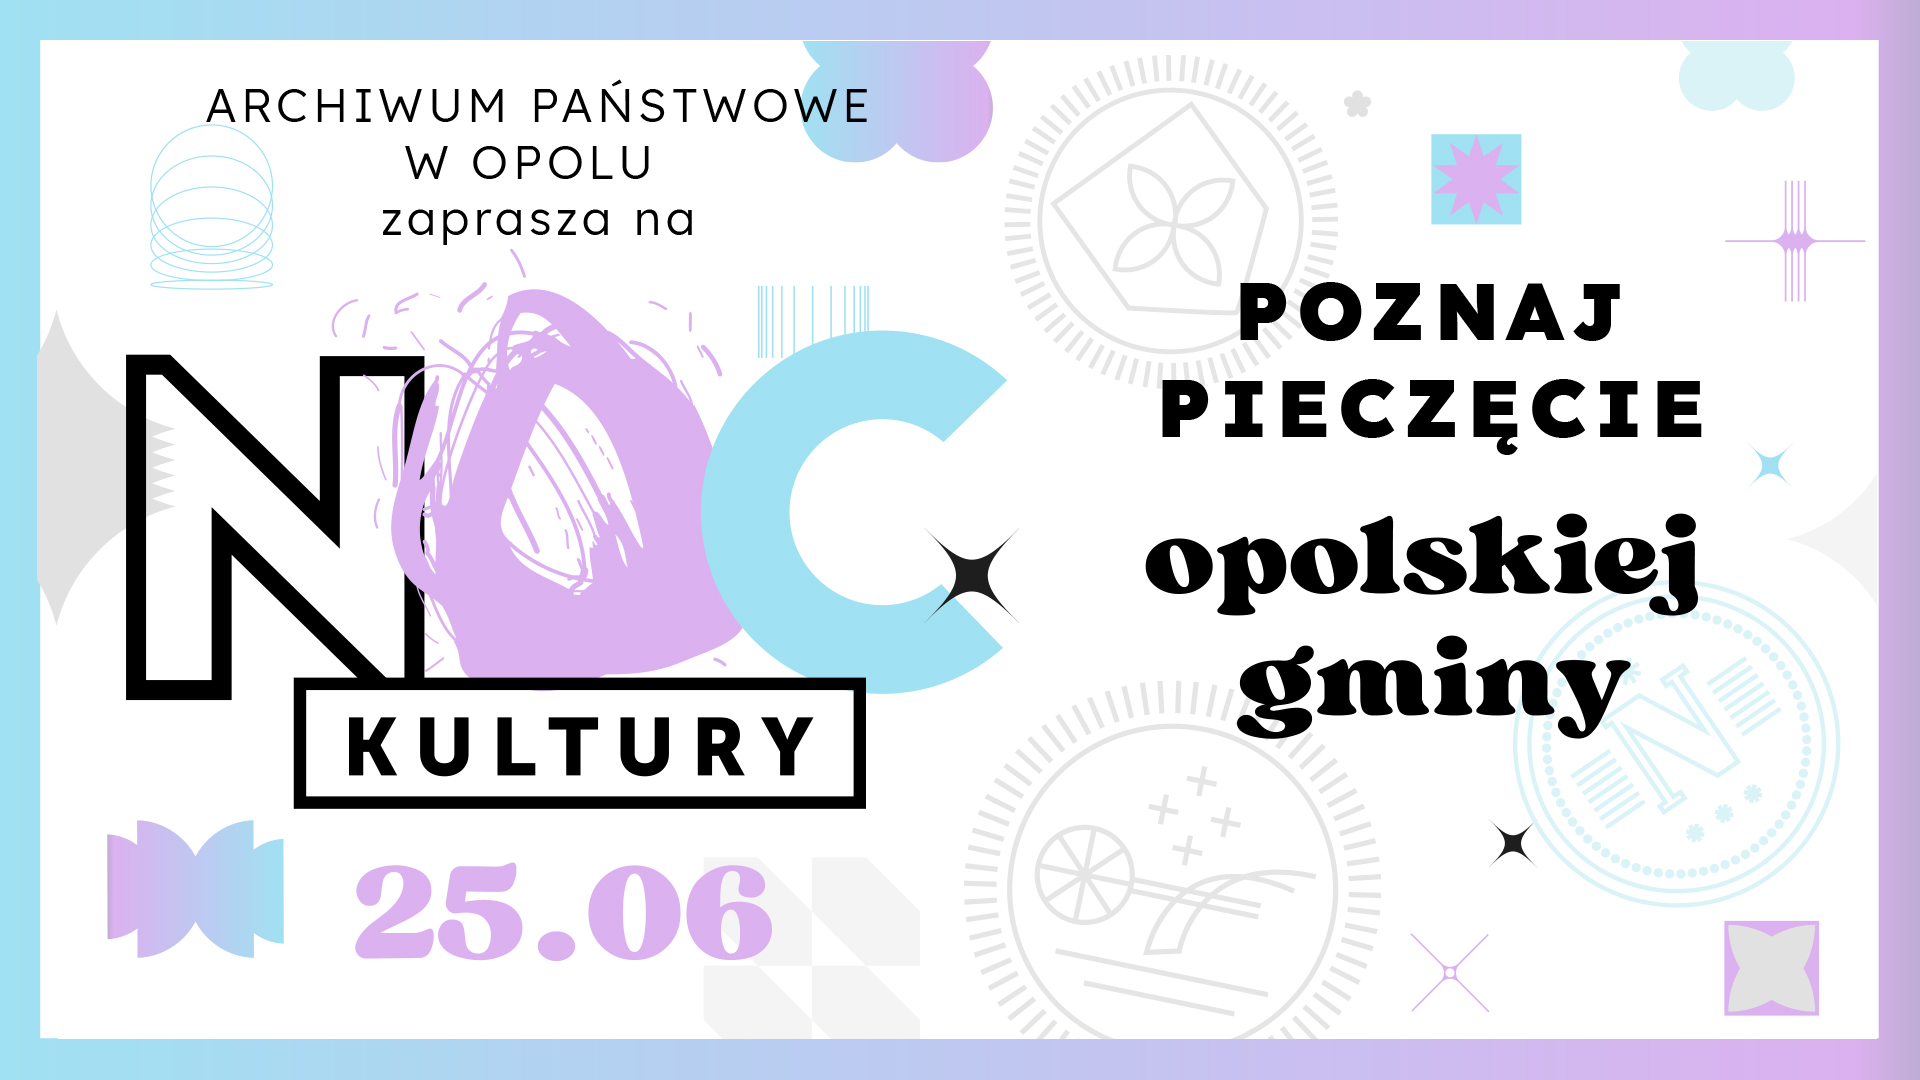 Grafika z tekstem: Archiwum Państwowe w Opolu zaprasza na Noc Kultury, 25 czerwca, Poznaj pieczecie opolskiej gminy